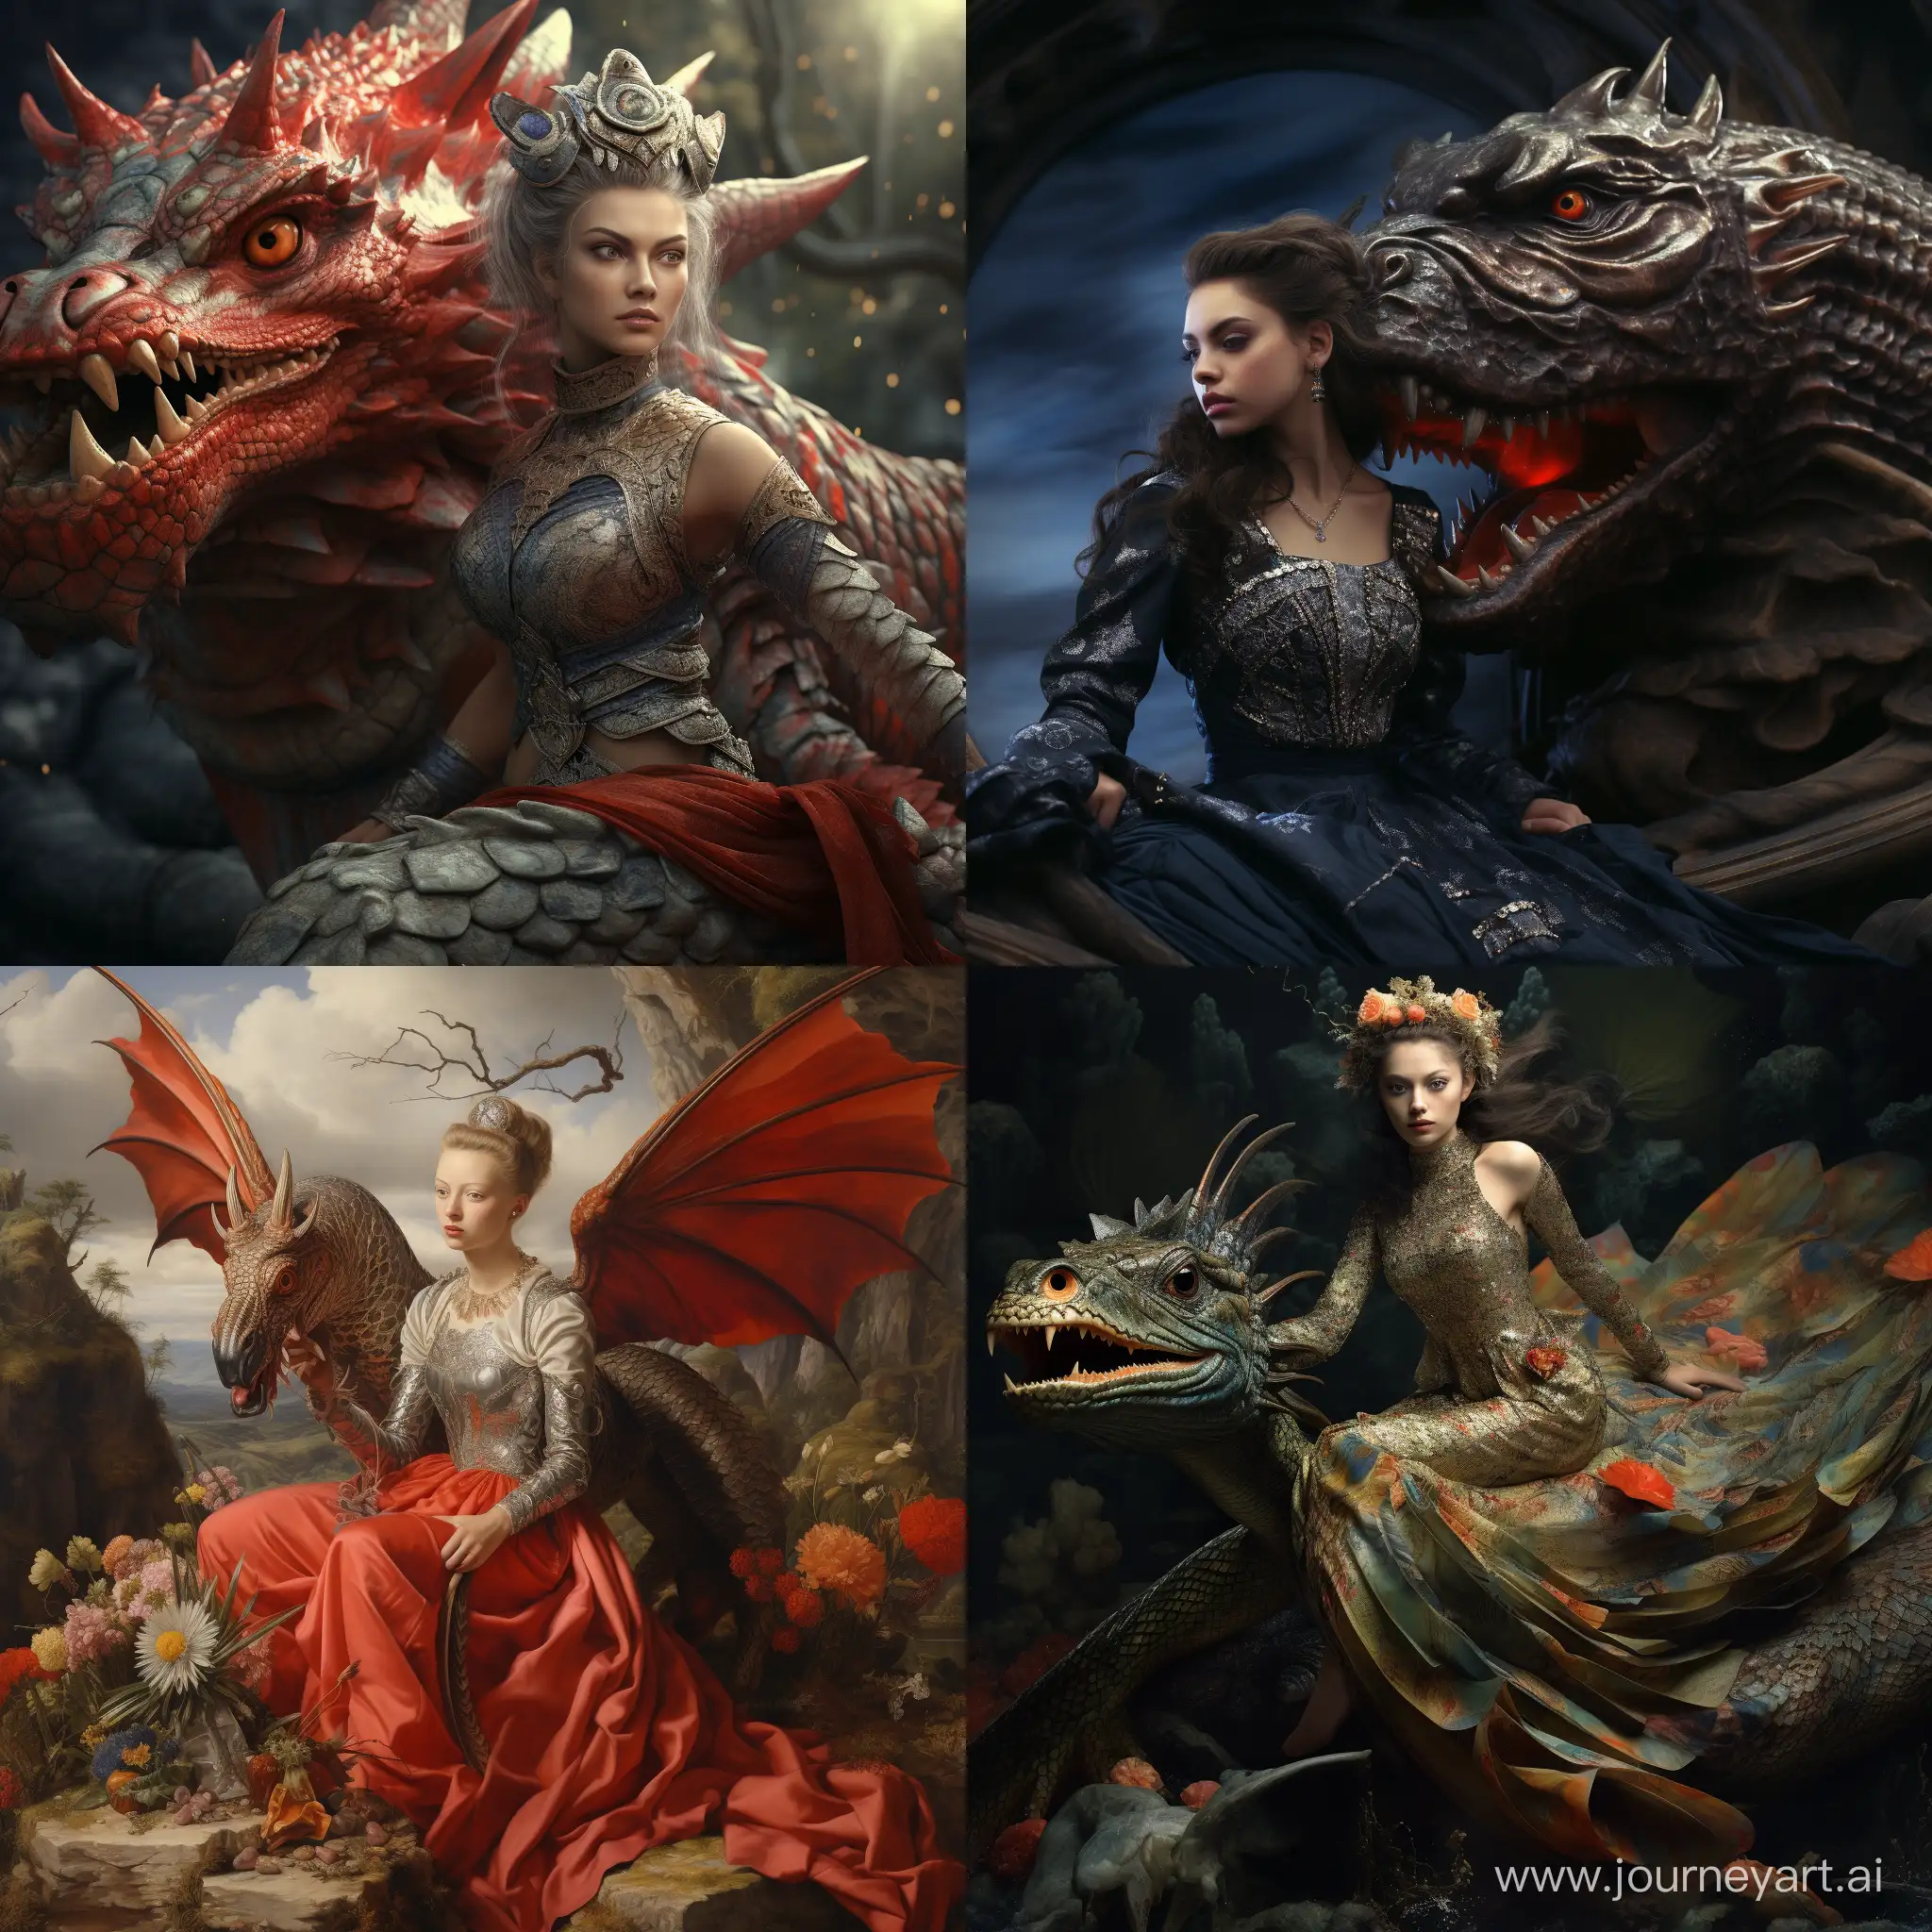 A woman riding a dragon